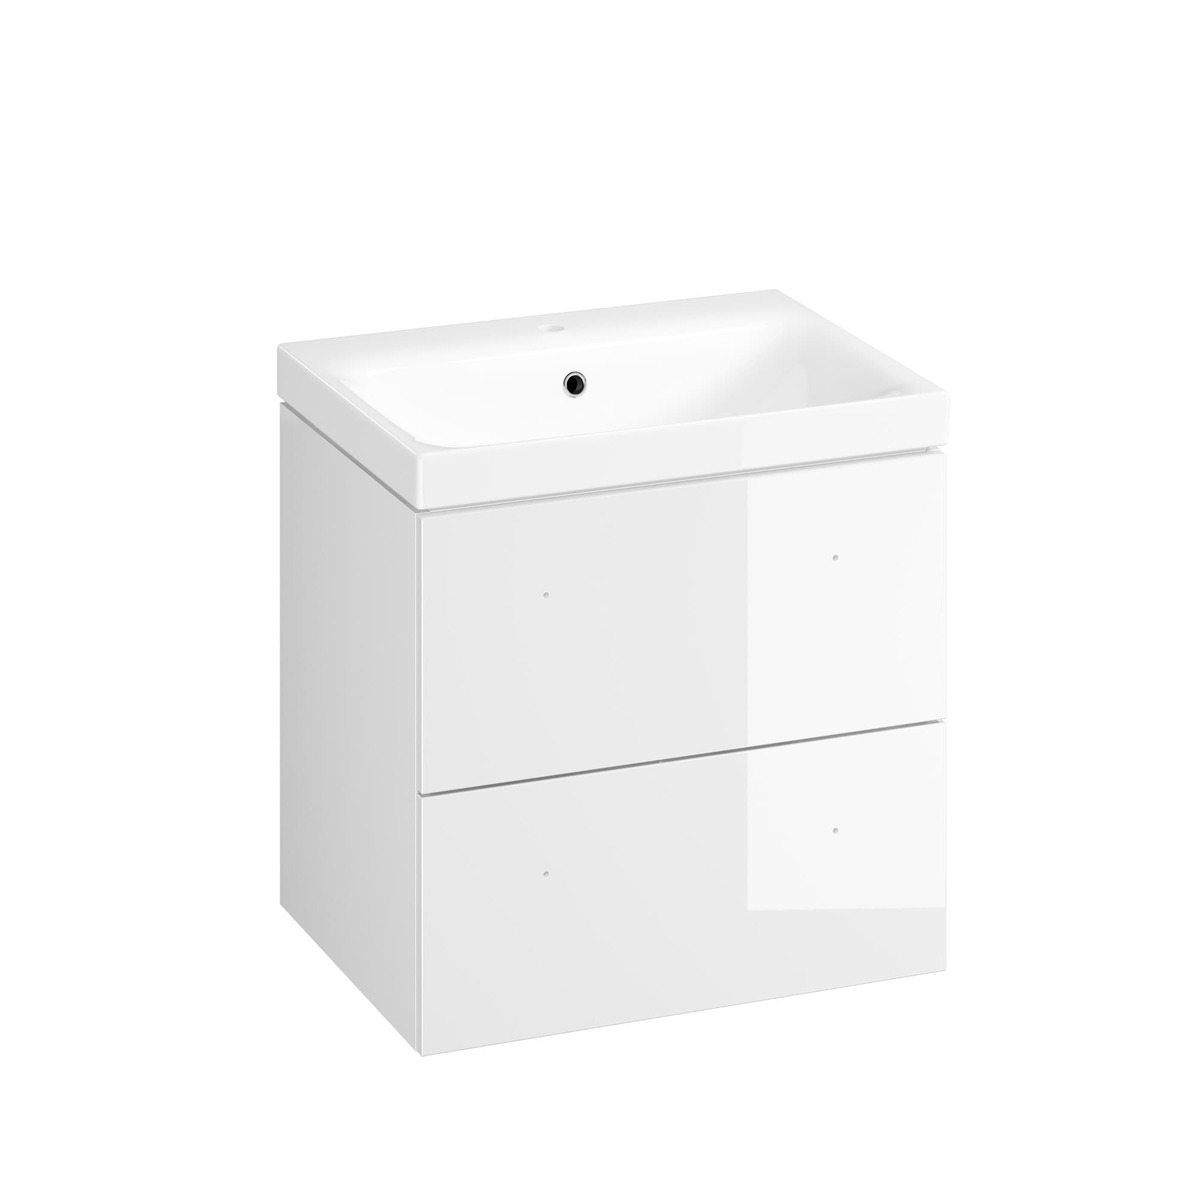 Koupelnová skříňka s umyvadlem Cersanit Medley 60x61.5x45 cm bílá lesk S801-352-DSM Cersanit